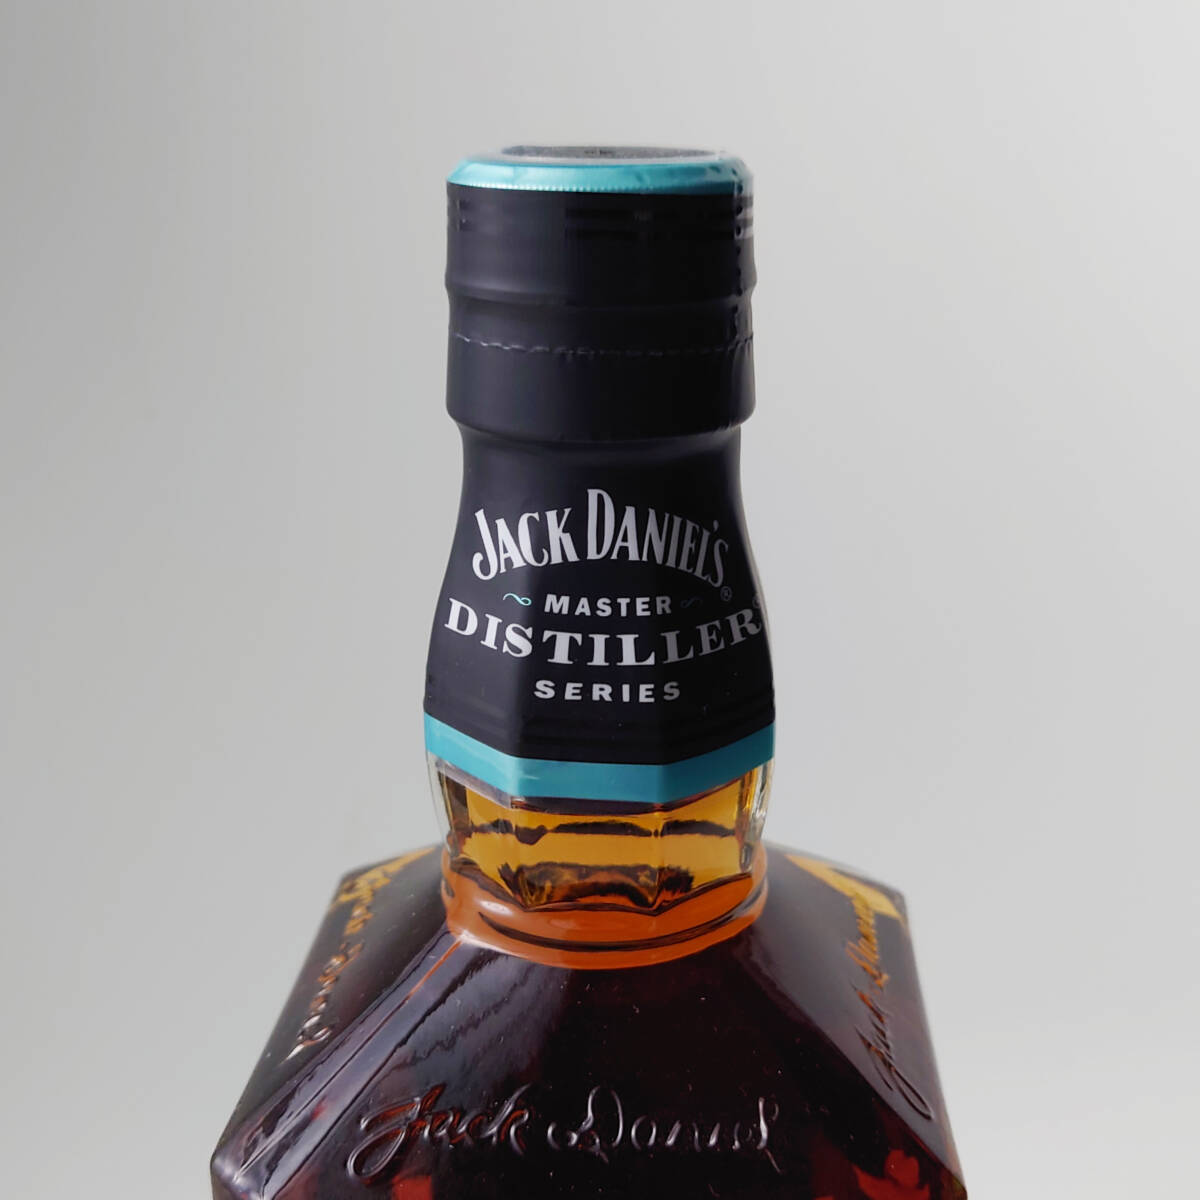 Jack Daniel's Master Distiller Series No.4 ジャックダニエル マスターディスティラーシリーズ 700ml